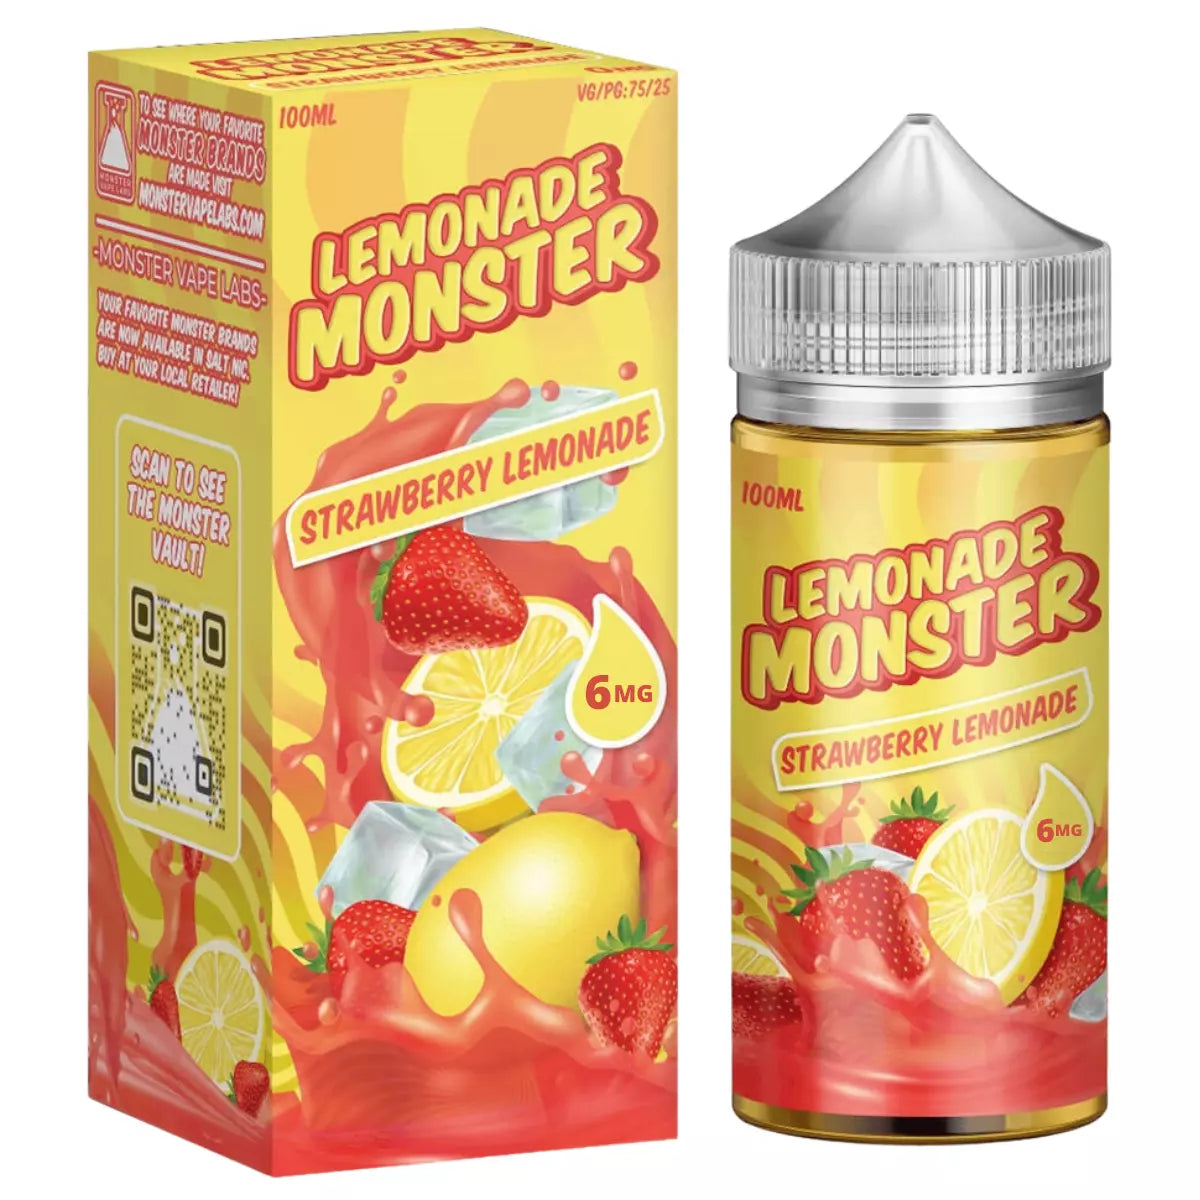 Strawberry Lemonade Monster by Jam Monster - 100ml